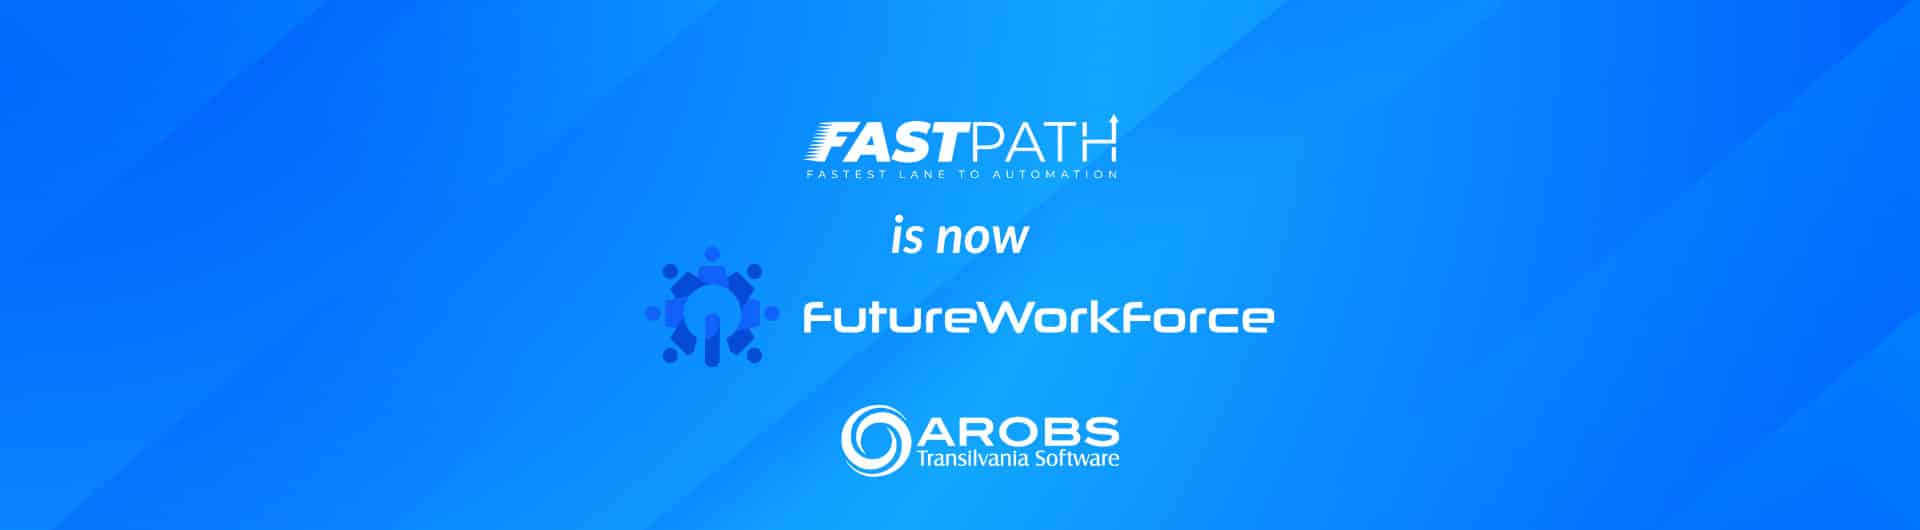 Future WorkForce